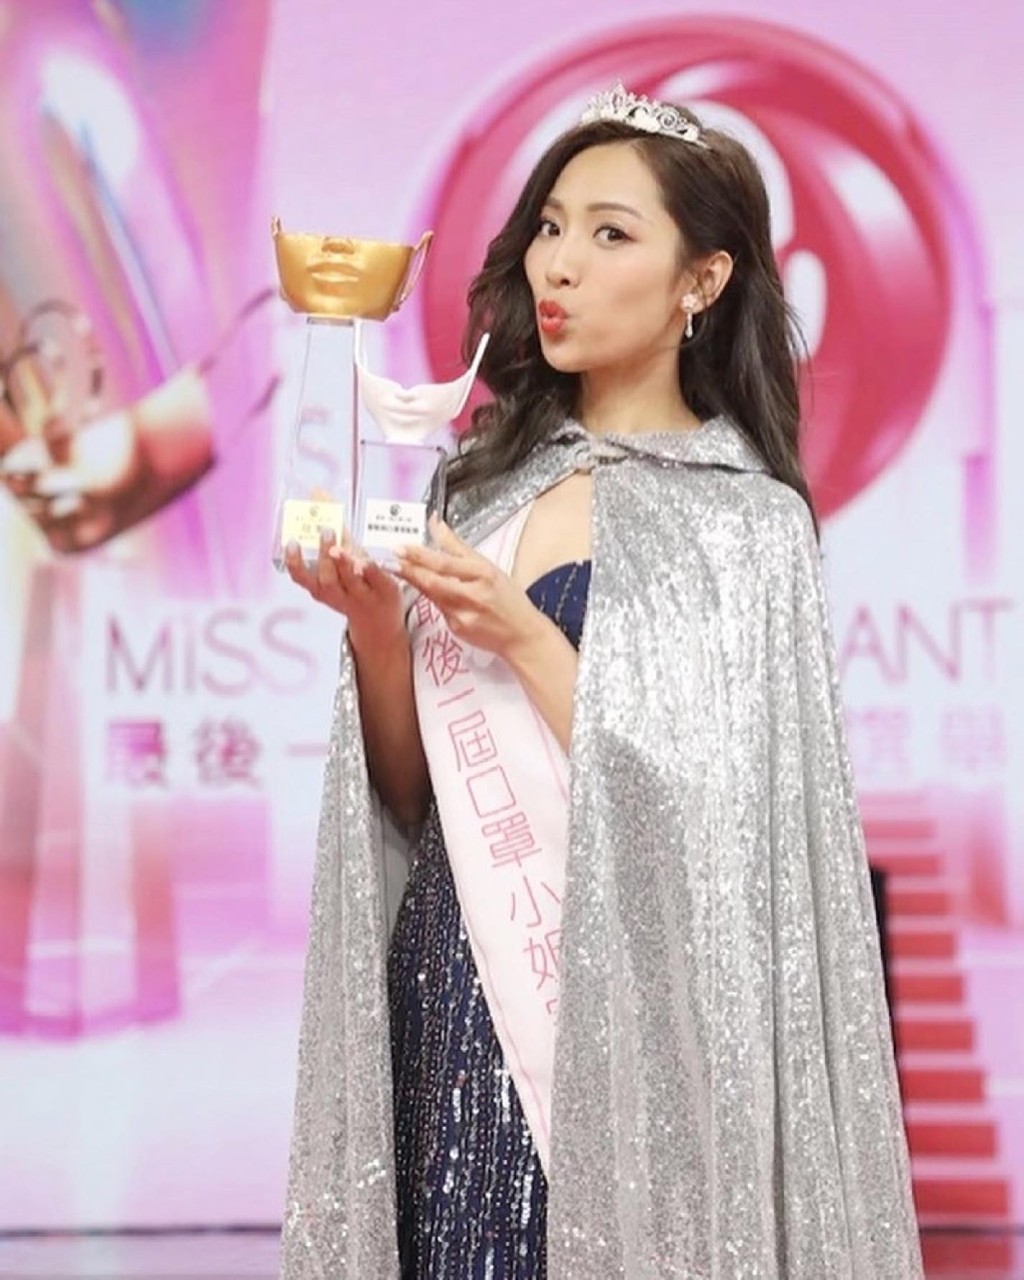 郑伊琪是《最后一届口罩小姐选举》冠军兼「服装与口罩配搭奖」得主。